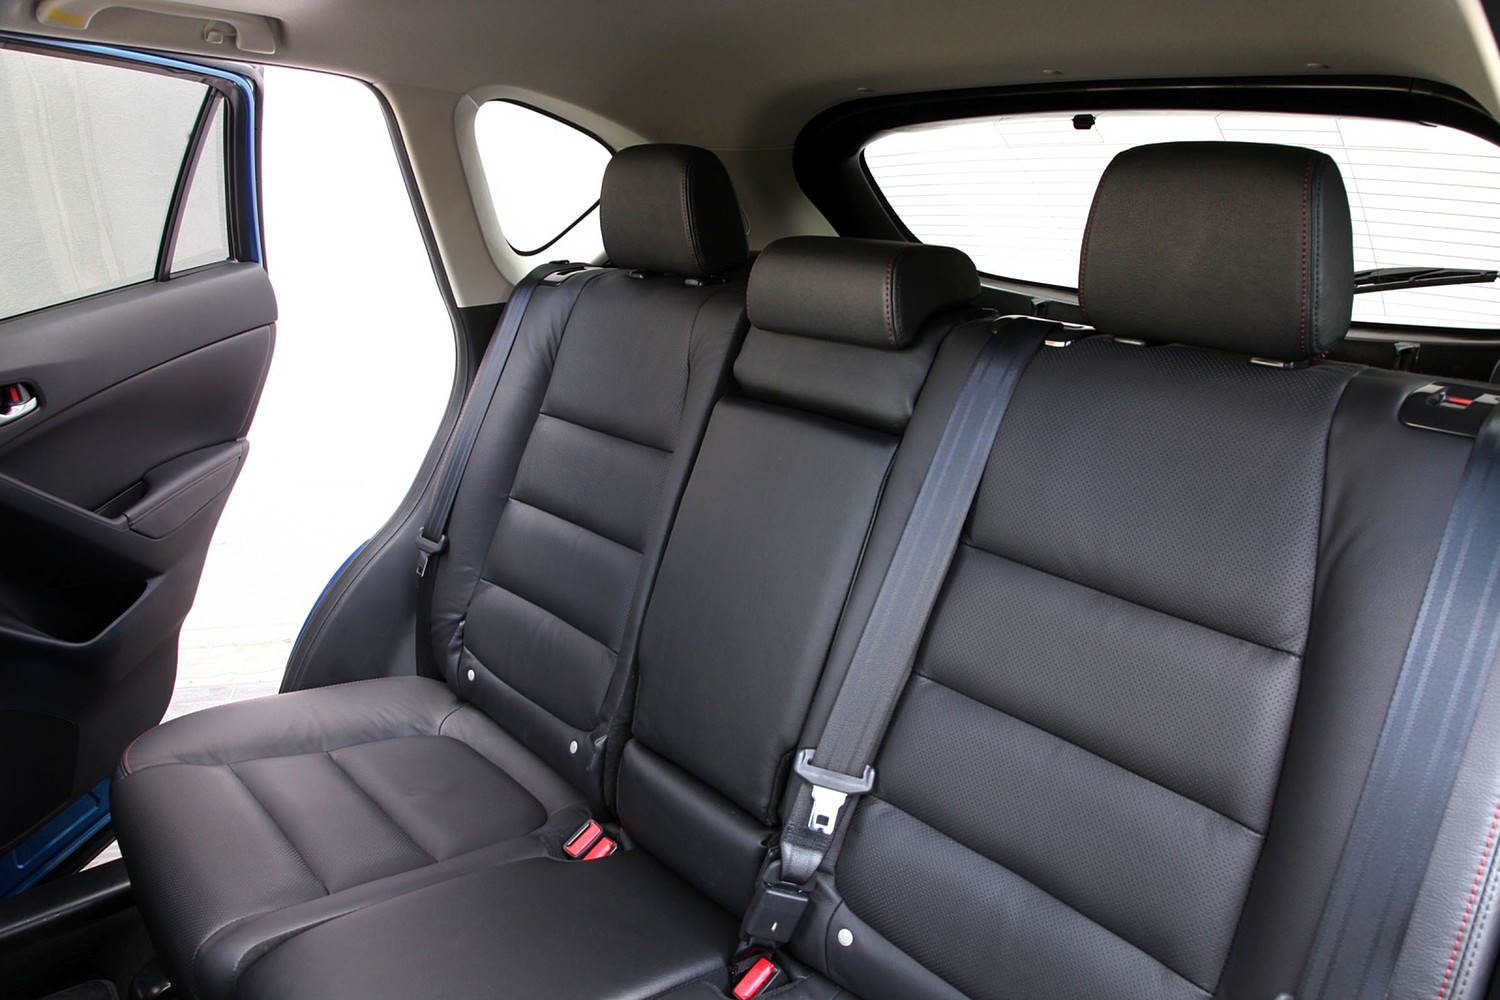 Mazda CX-5 Grand Touring 4dr SUV Rear Interior (2013 model year shown)